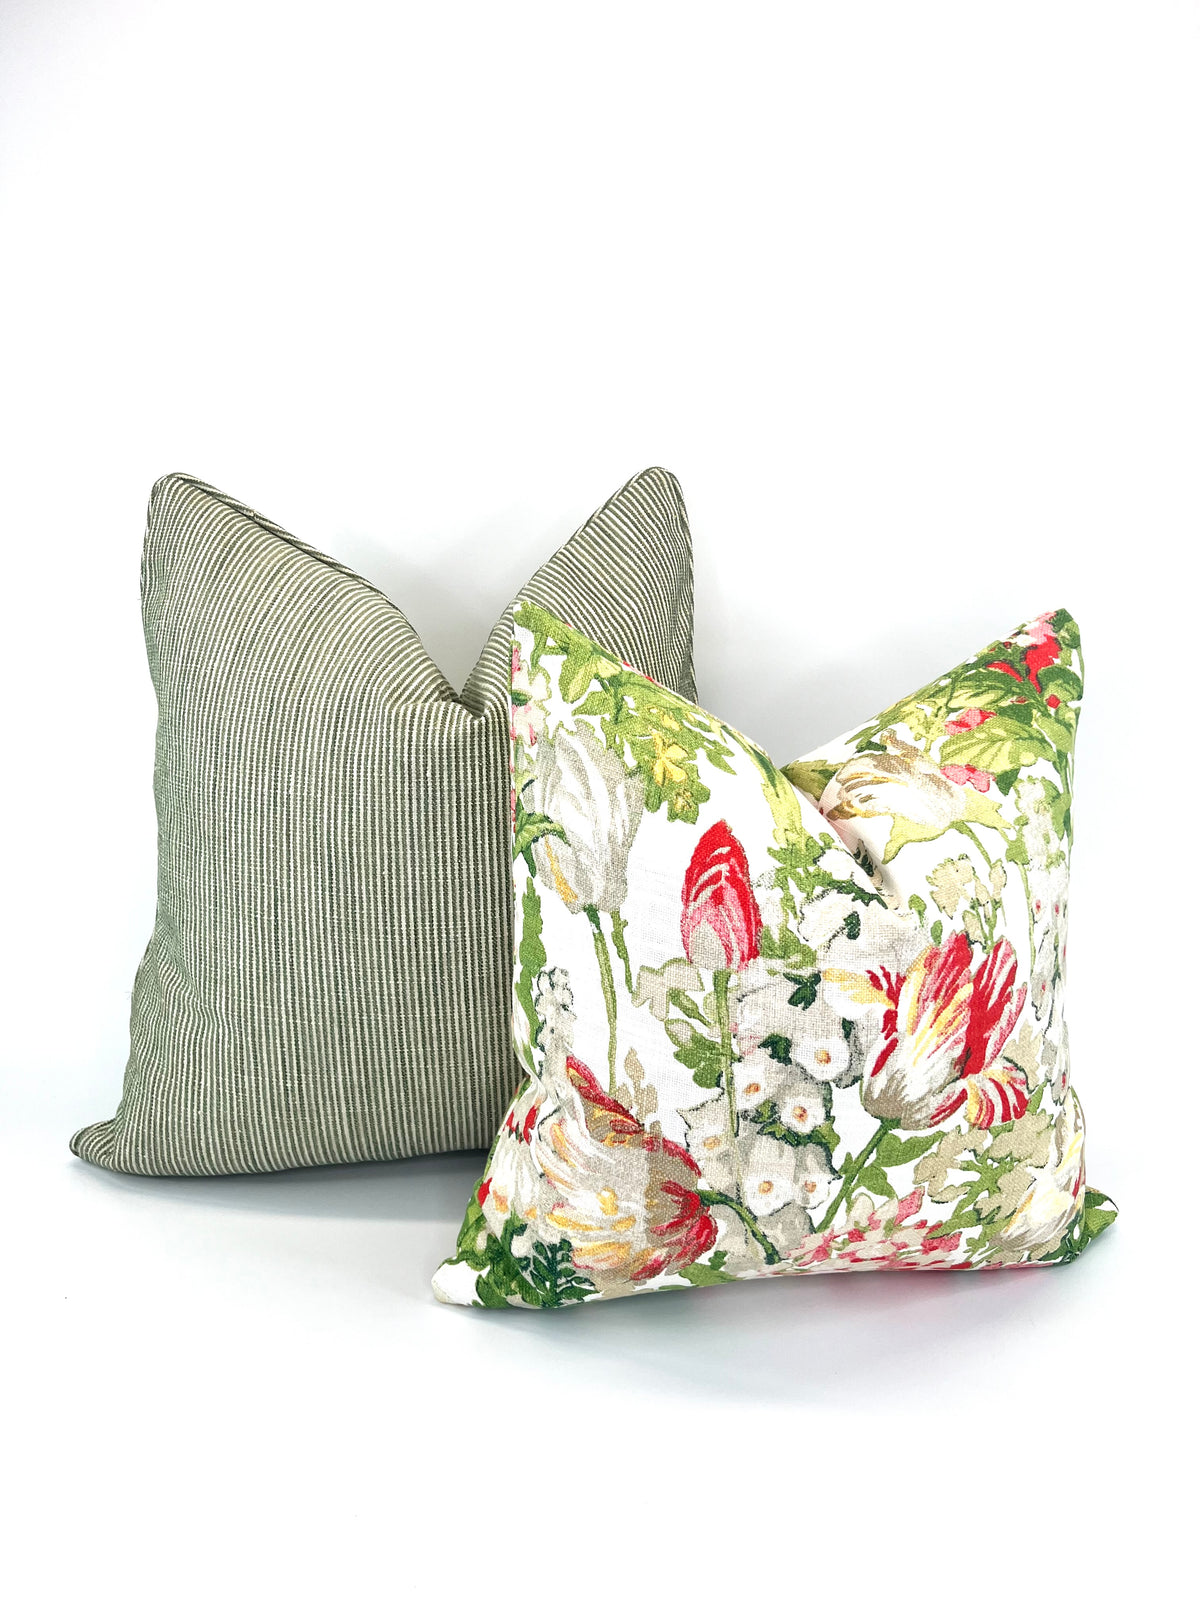 Decorative Pillow Cover in Spring Ready Garden